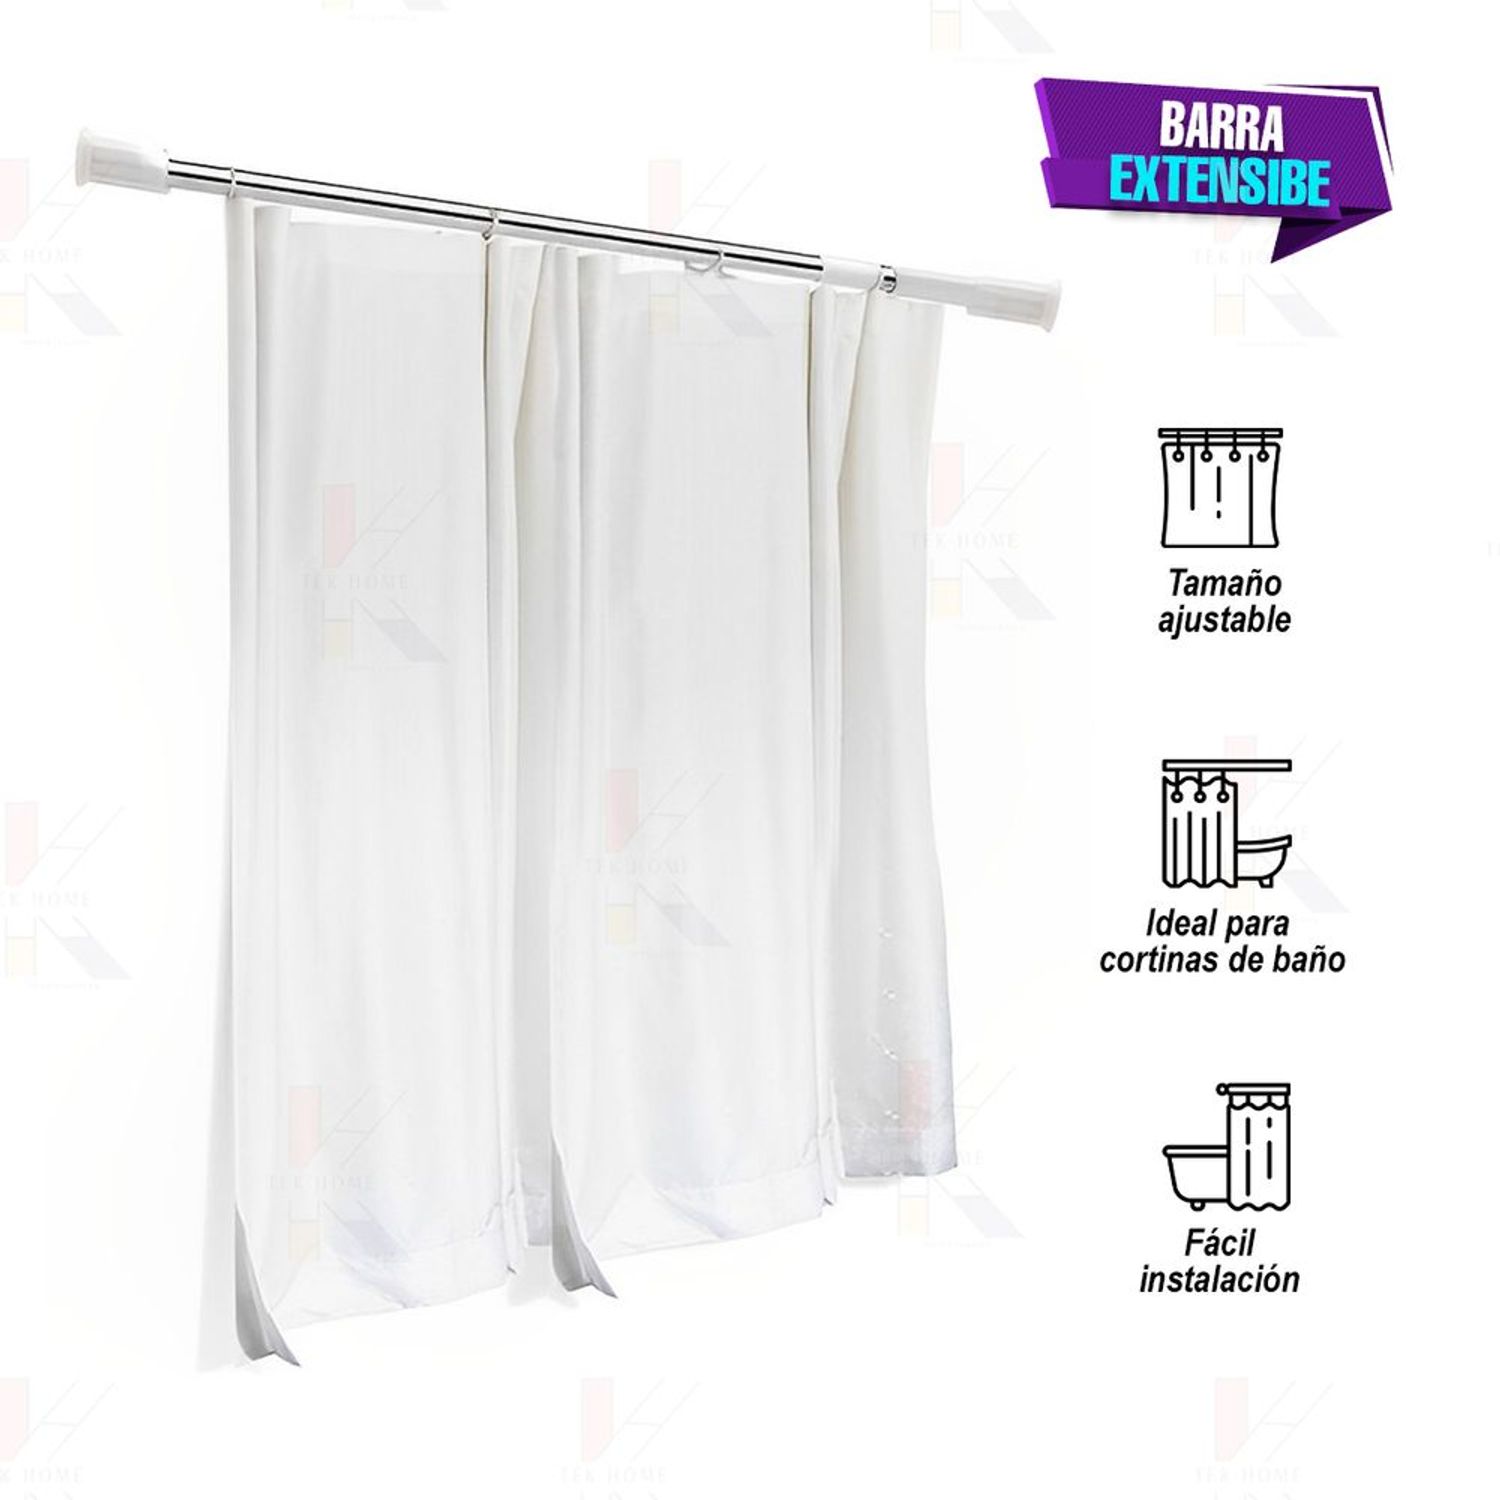 Barra cortina ducha extensible: compra online